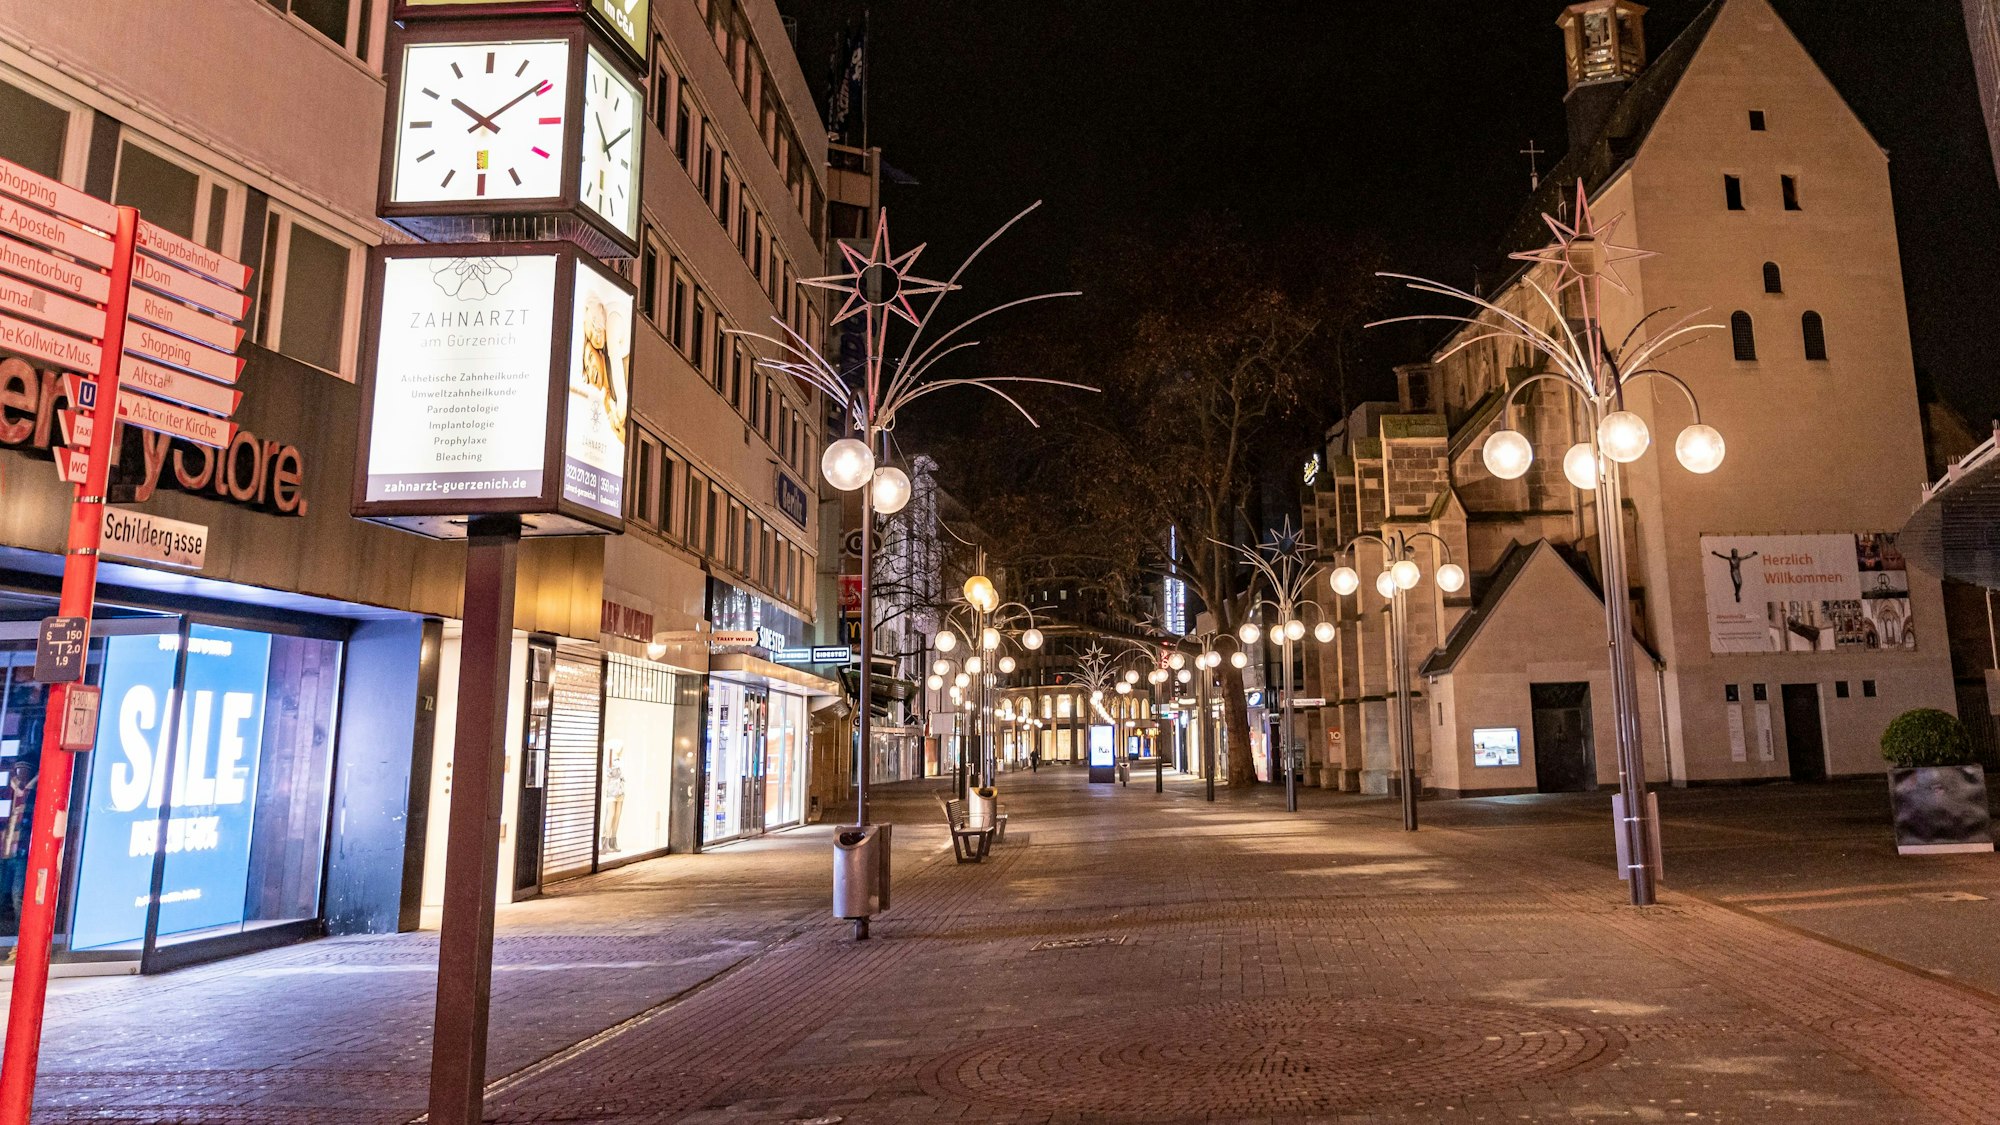 Blick auf die leere Schildergasse in Köln in der Nacht. Kein Mensch ist zu sehen.